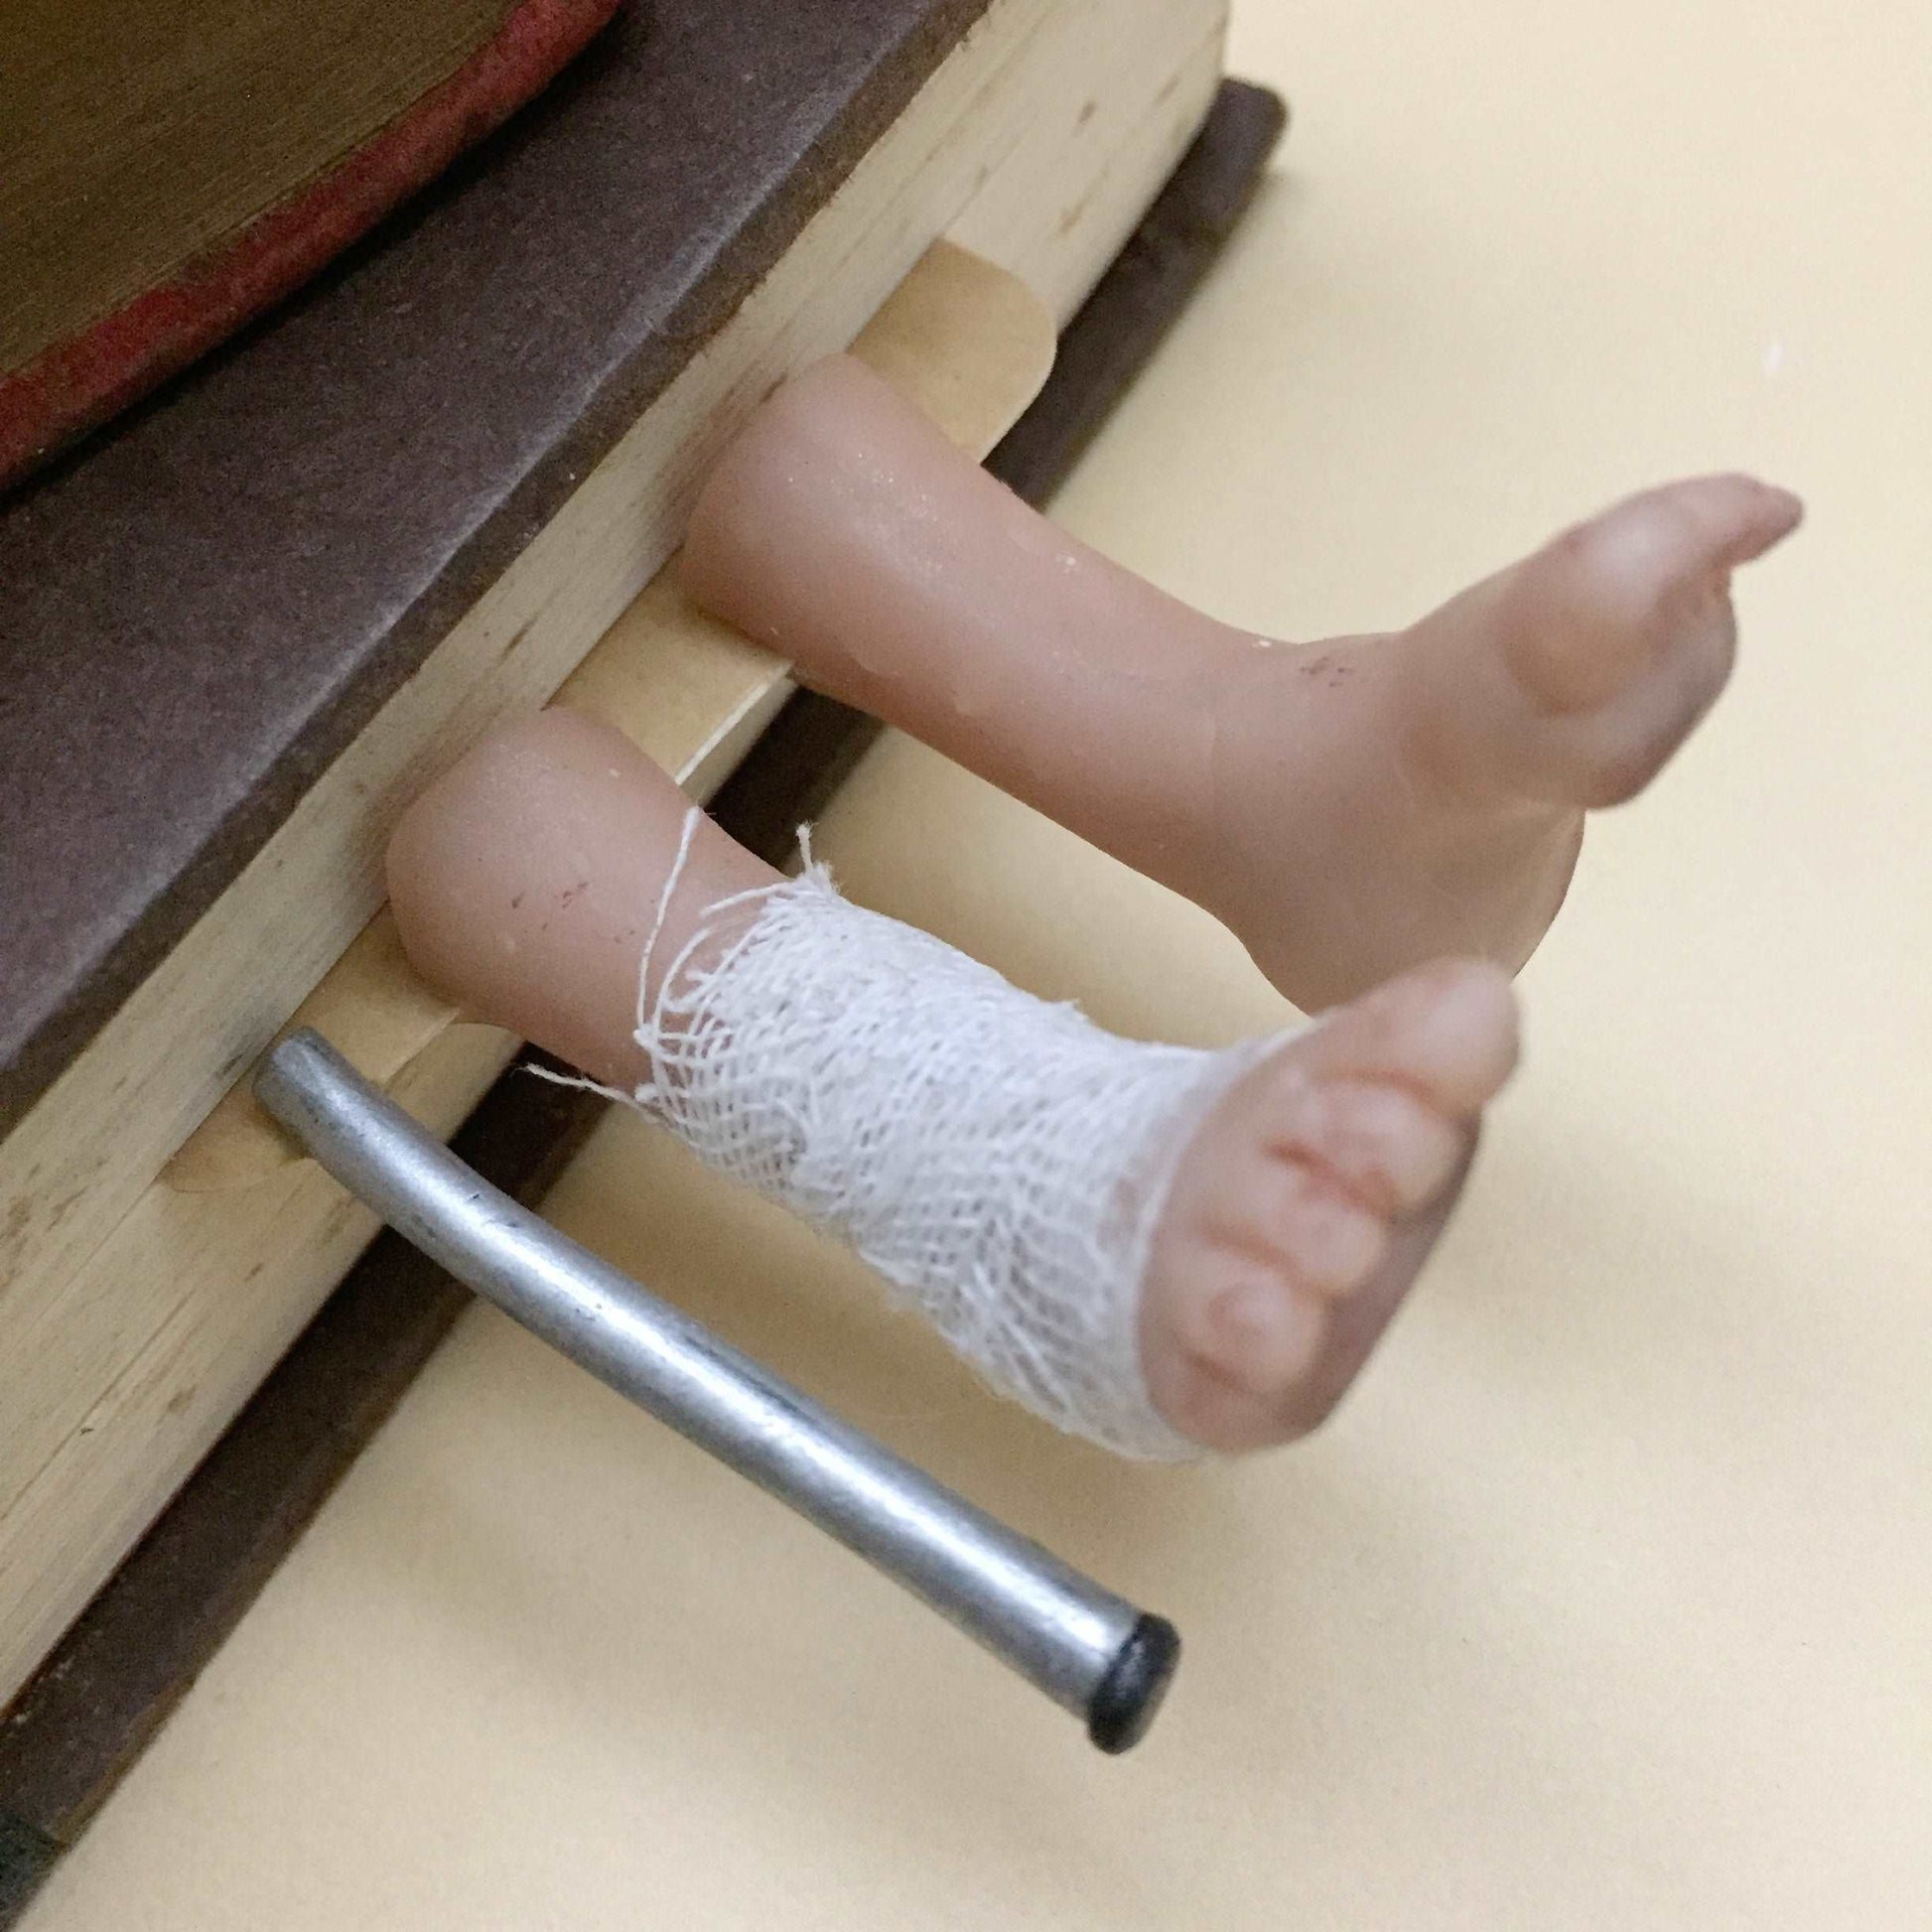 Break A Leg Handmade Miniature Leggy Bookmark